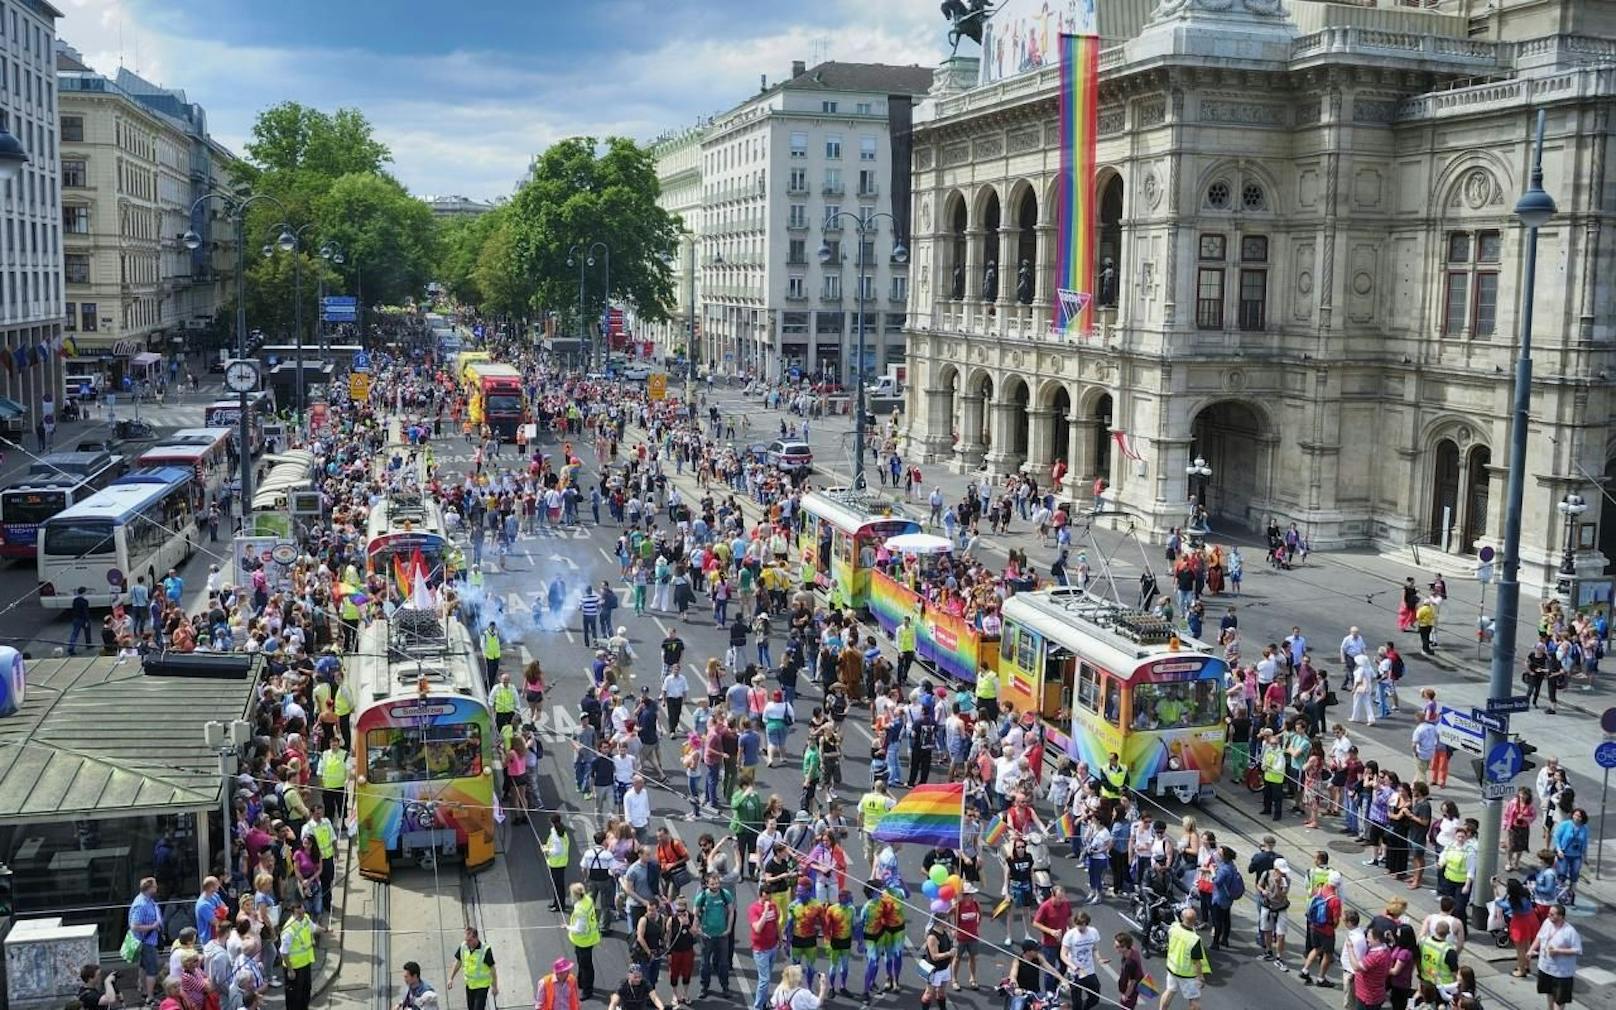 Auch heuer führen die Wiener Linien die große Euro Pride Parade über den Ring an. Dafür wurden zwei Sonderfahrzeuge im Regenbogendesign gebrandet. 